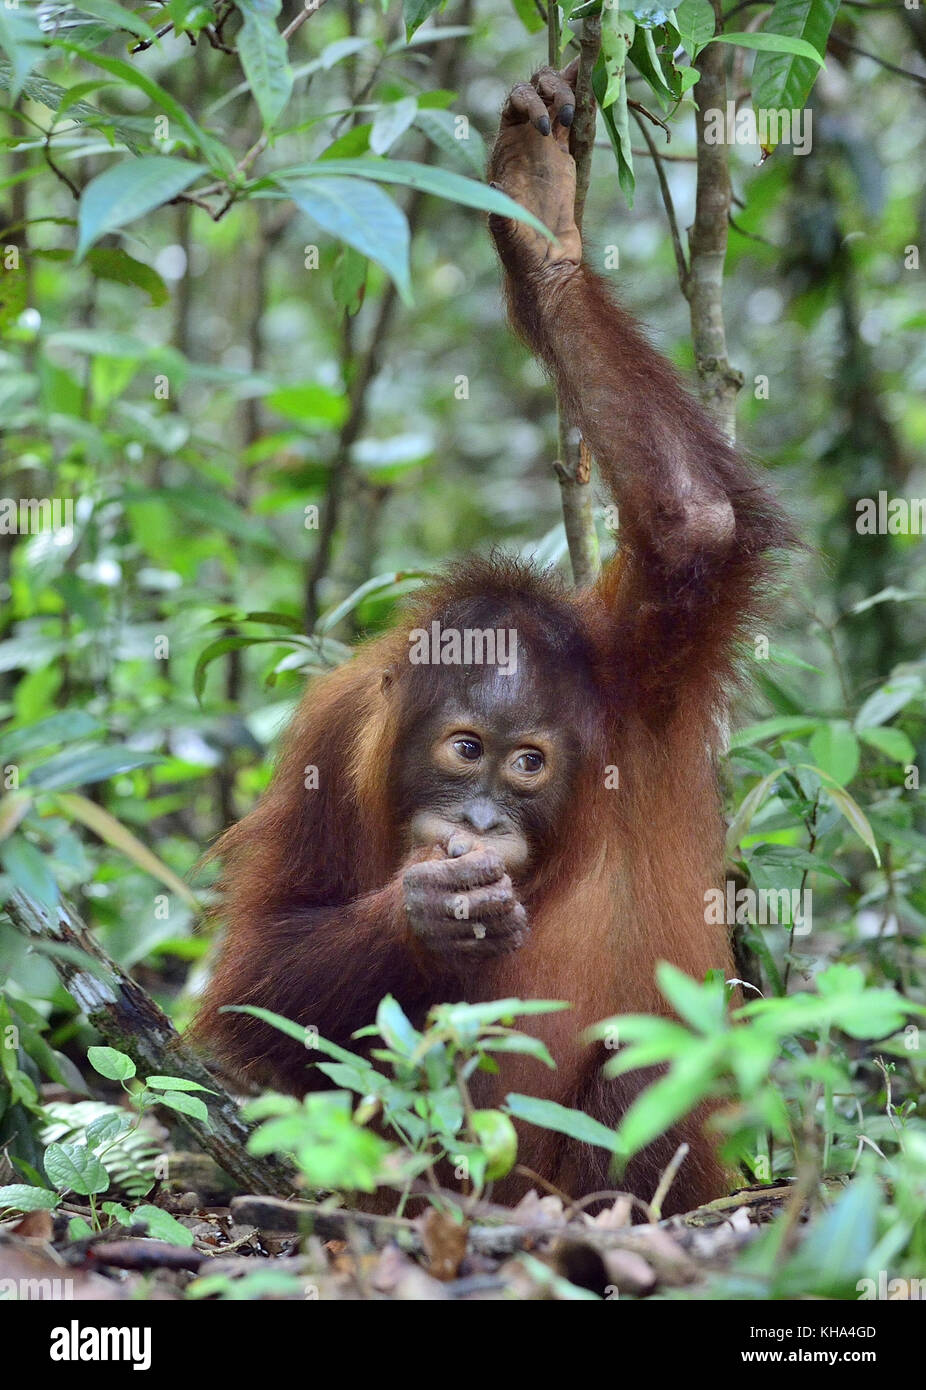 Cub von zentraler bornesischen Orang-utan (Pongo pygmaeus wurmbii) im natürlichen Lebensraum. wilde Natur im tropischen Regenwald von Borneo. Indonesien Stockfoto